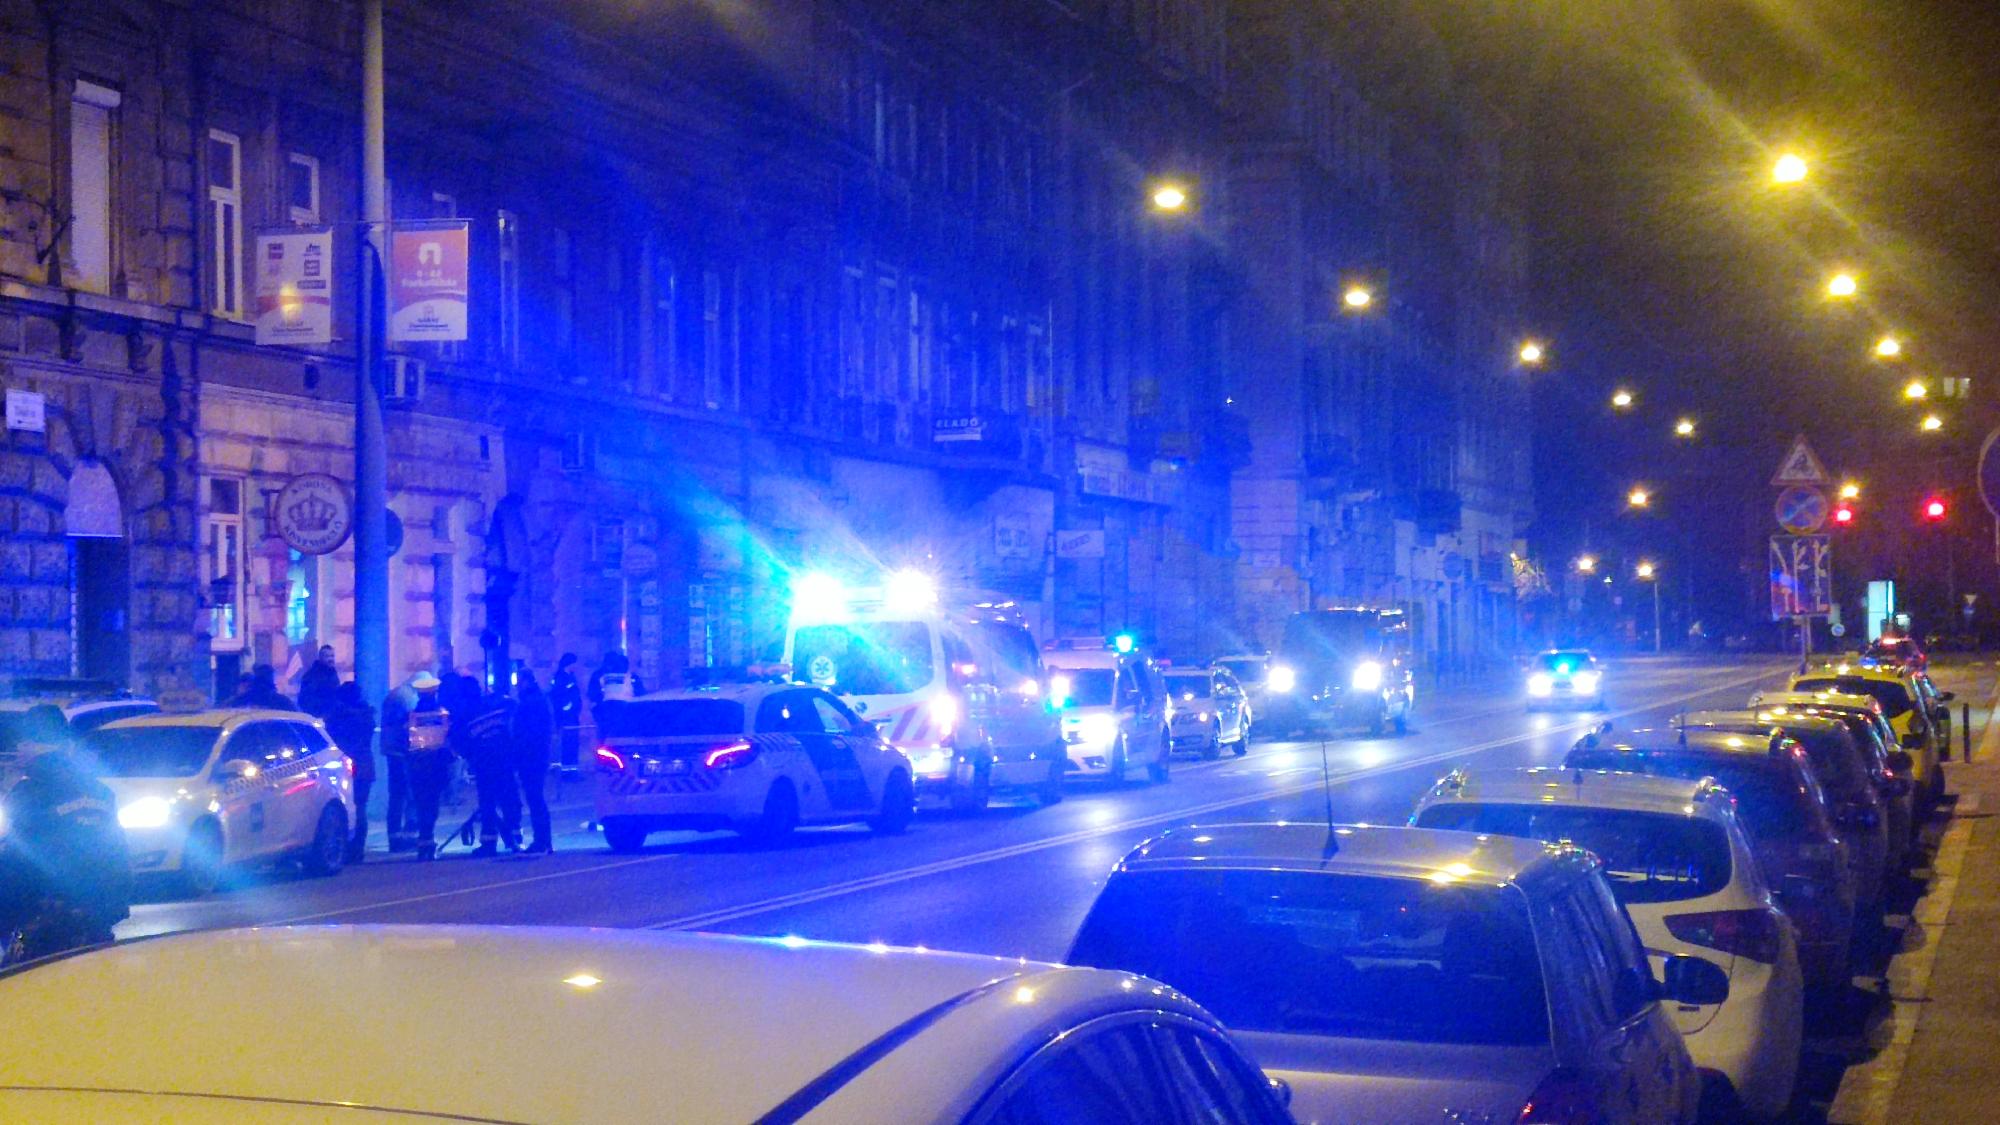 Frissítve: Óriási erőkkel vonult ki a rendőrség Budapesten egy rejtélyes haláleset miatt